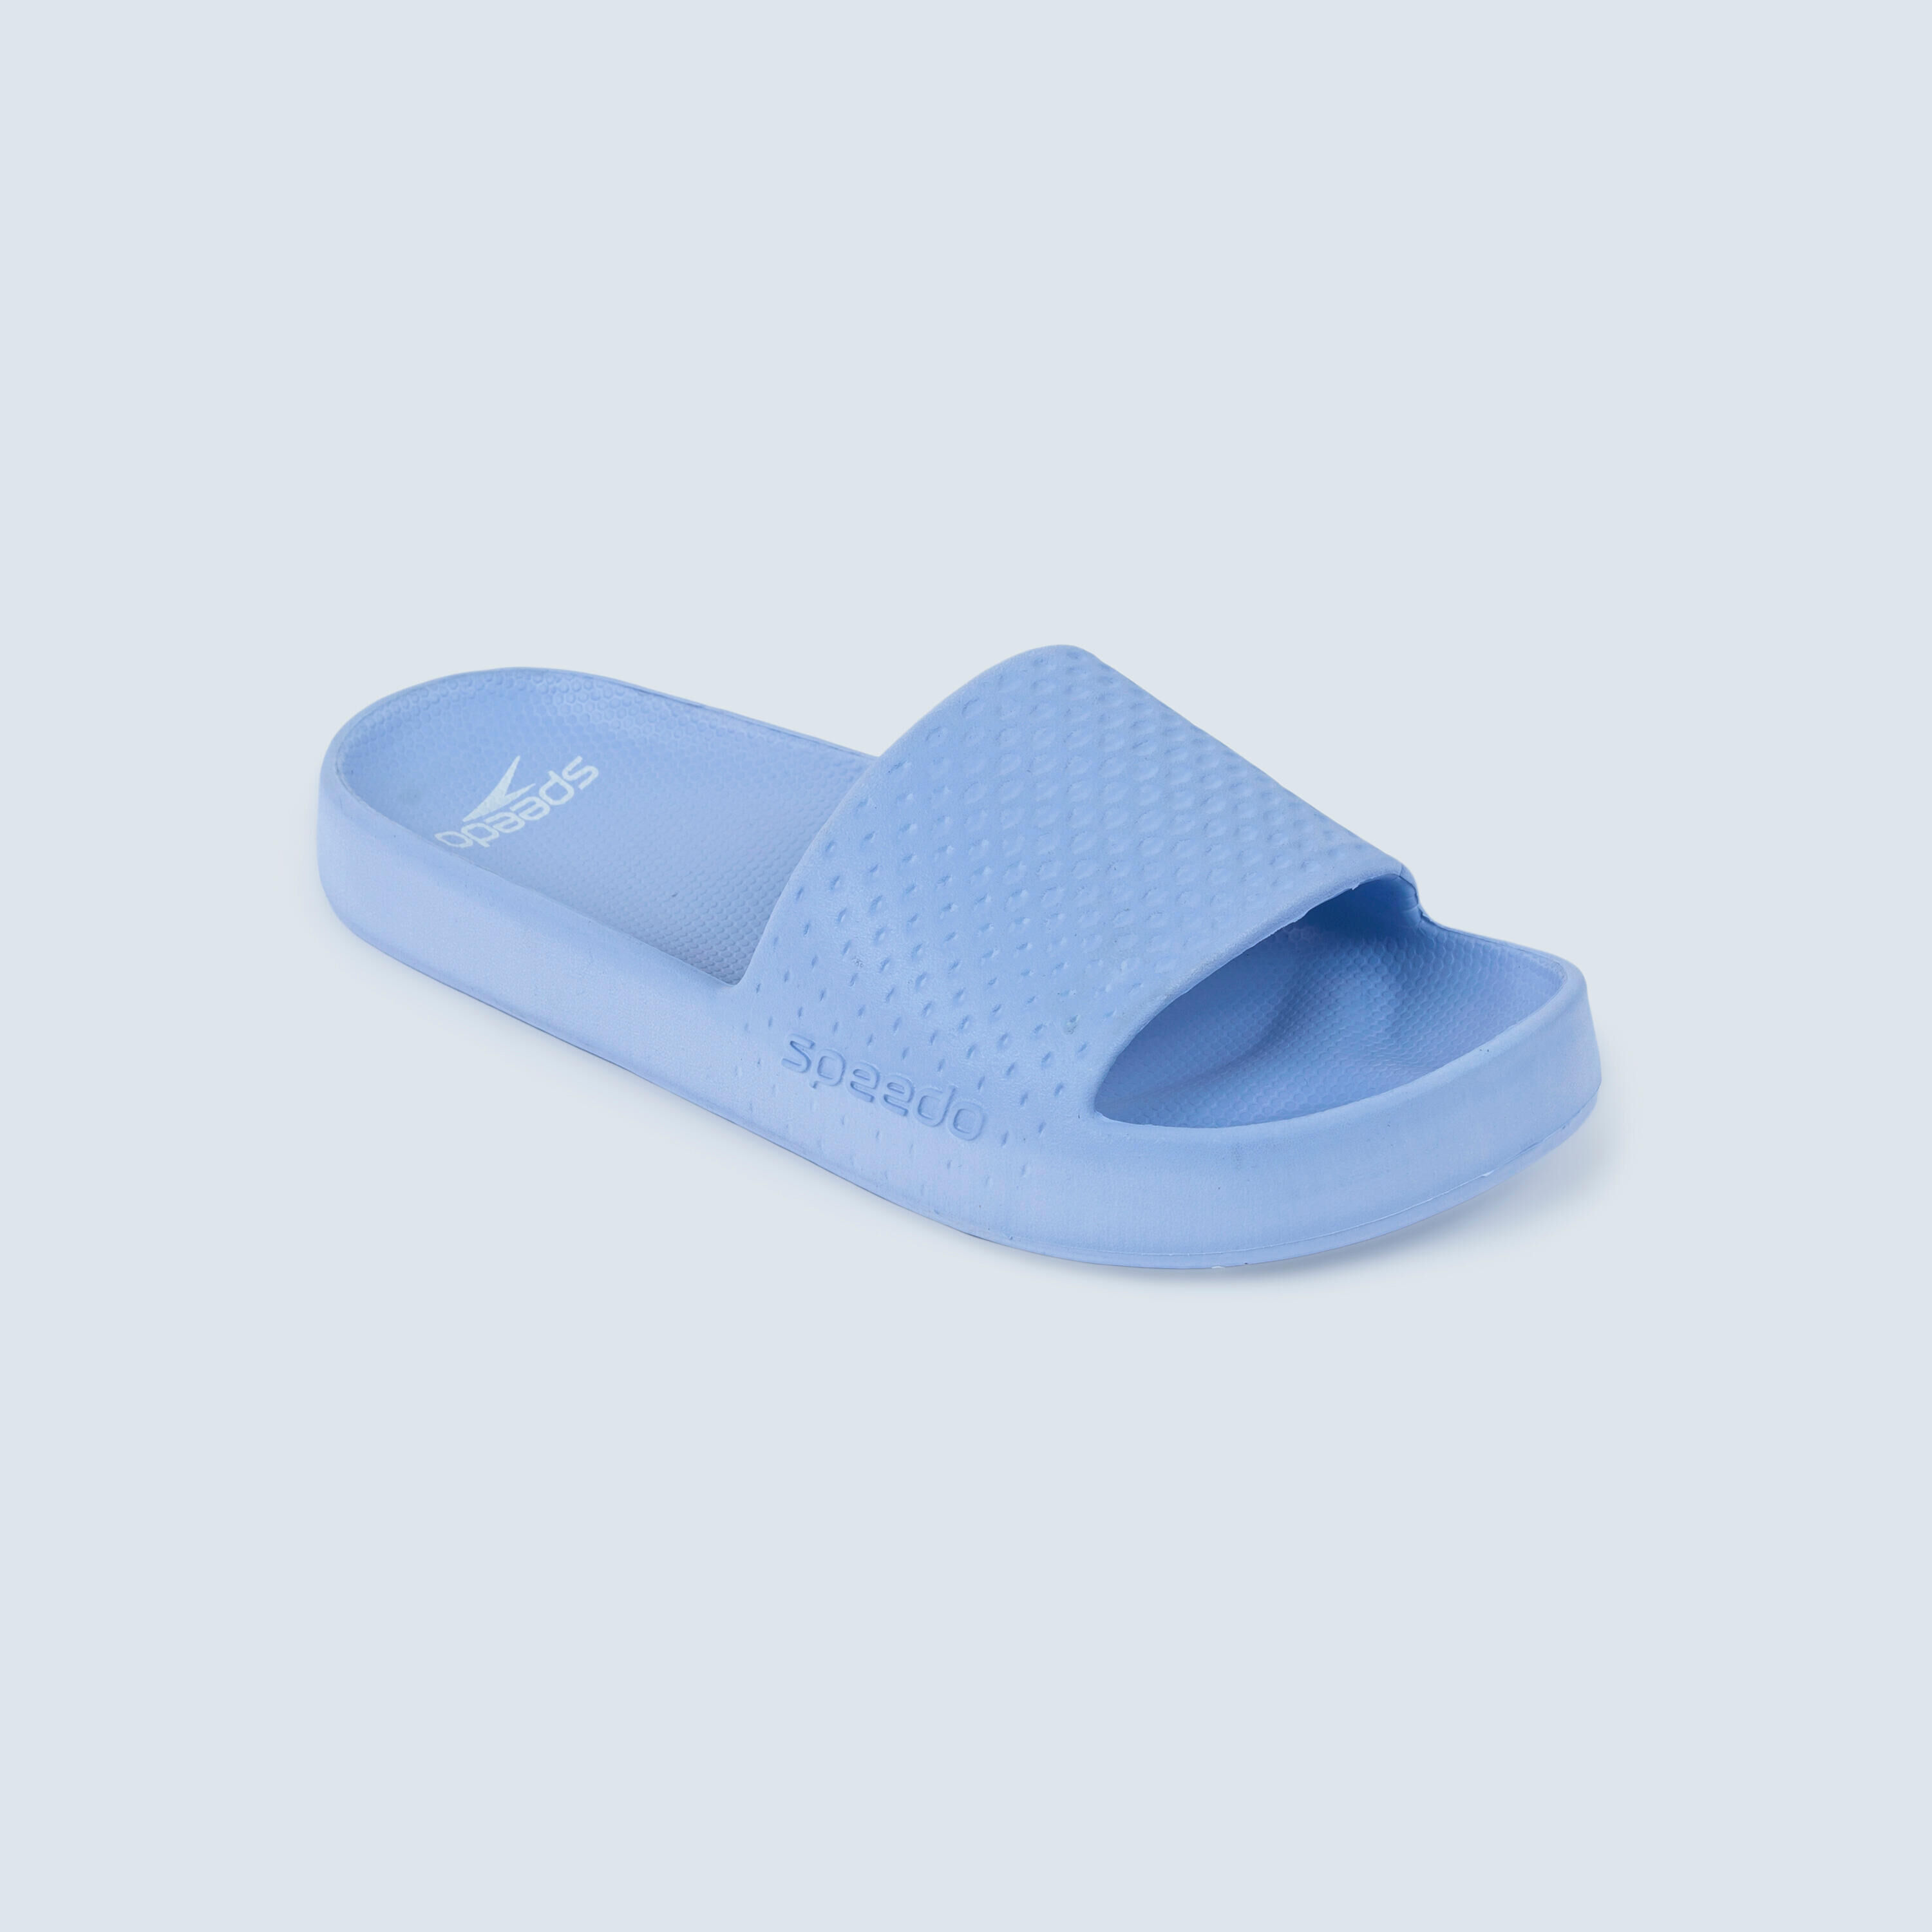 SPEEDO SPEEDO ENTRY flipflop sandals blue